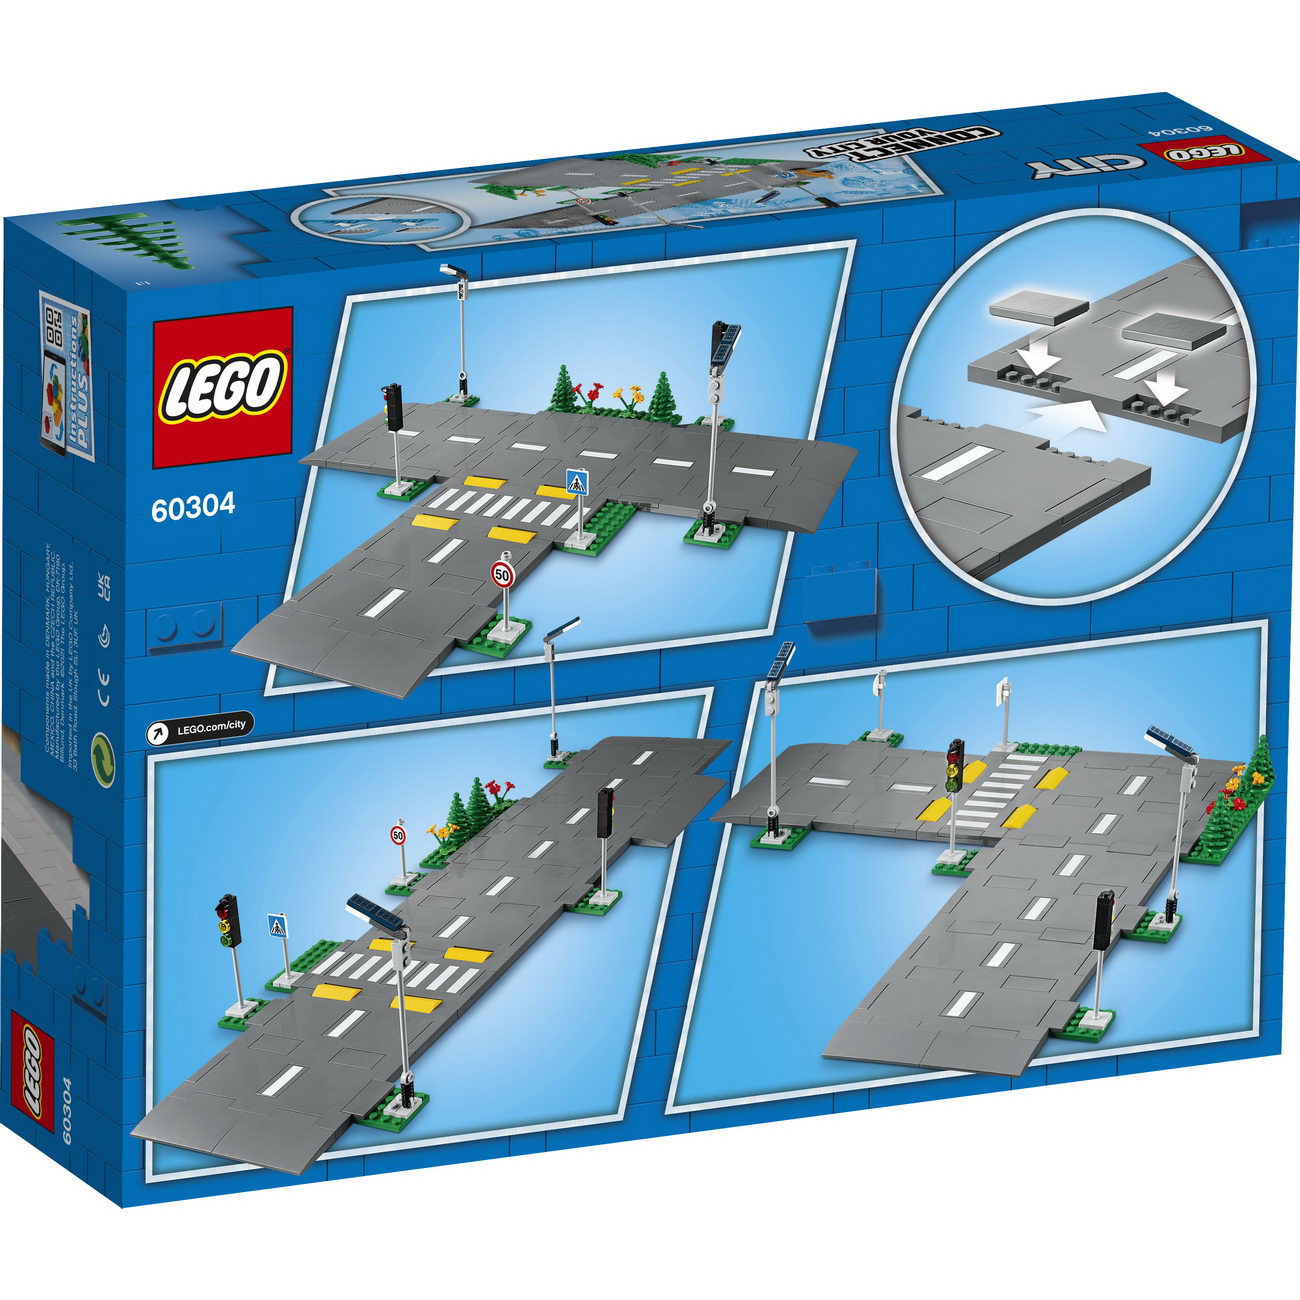 LEGO City 60304 - Straßenkreuzung mit Ampeln